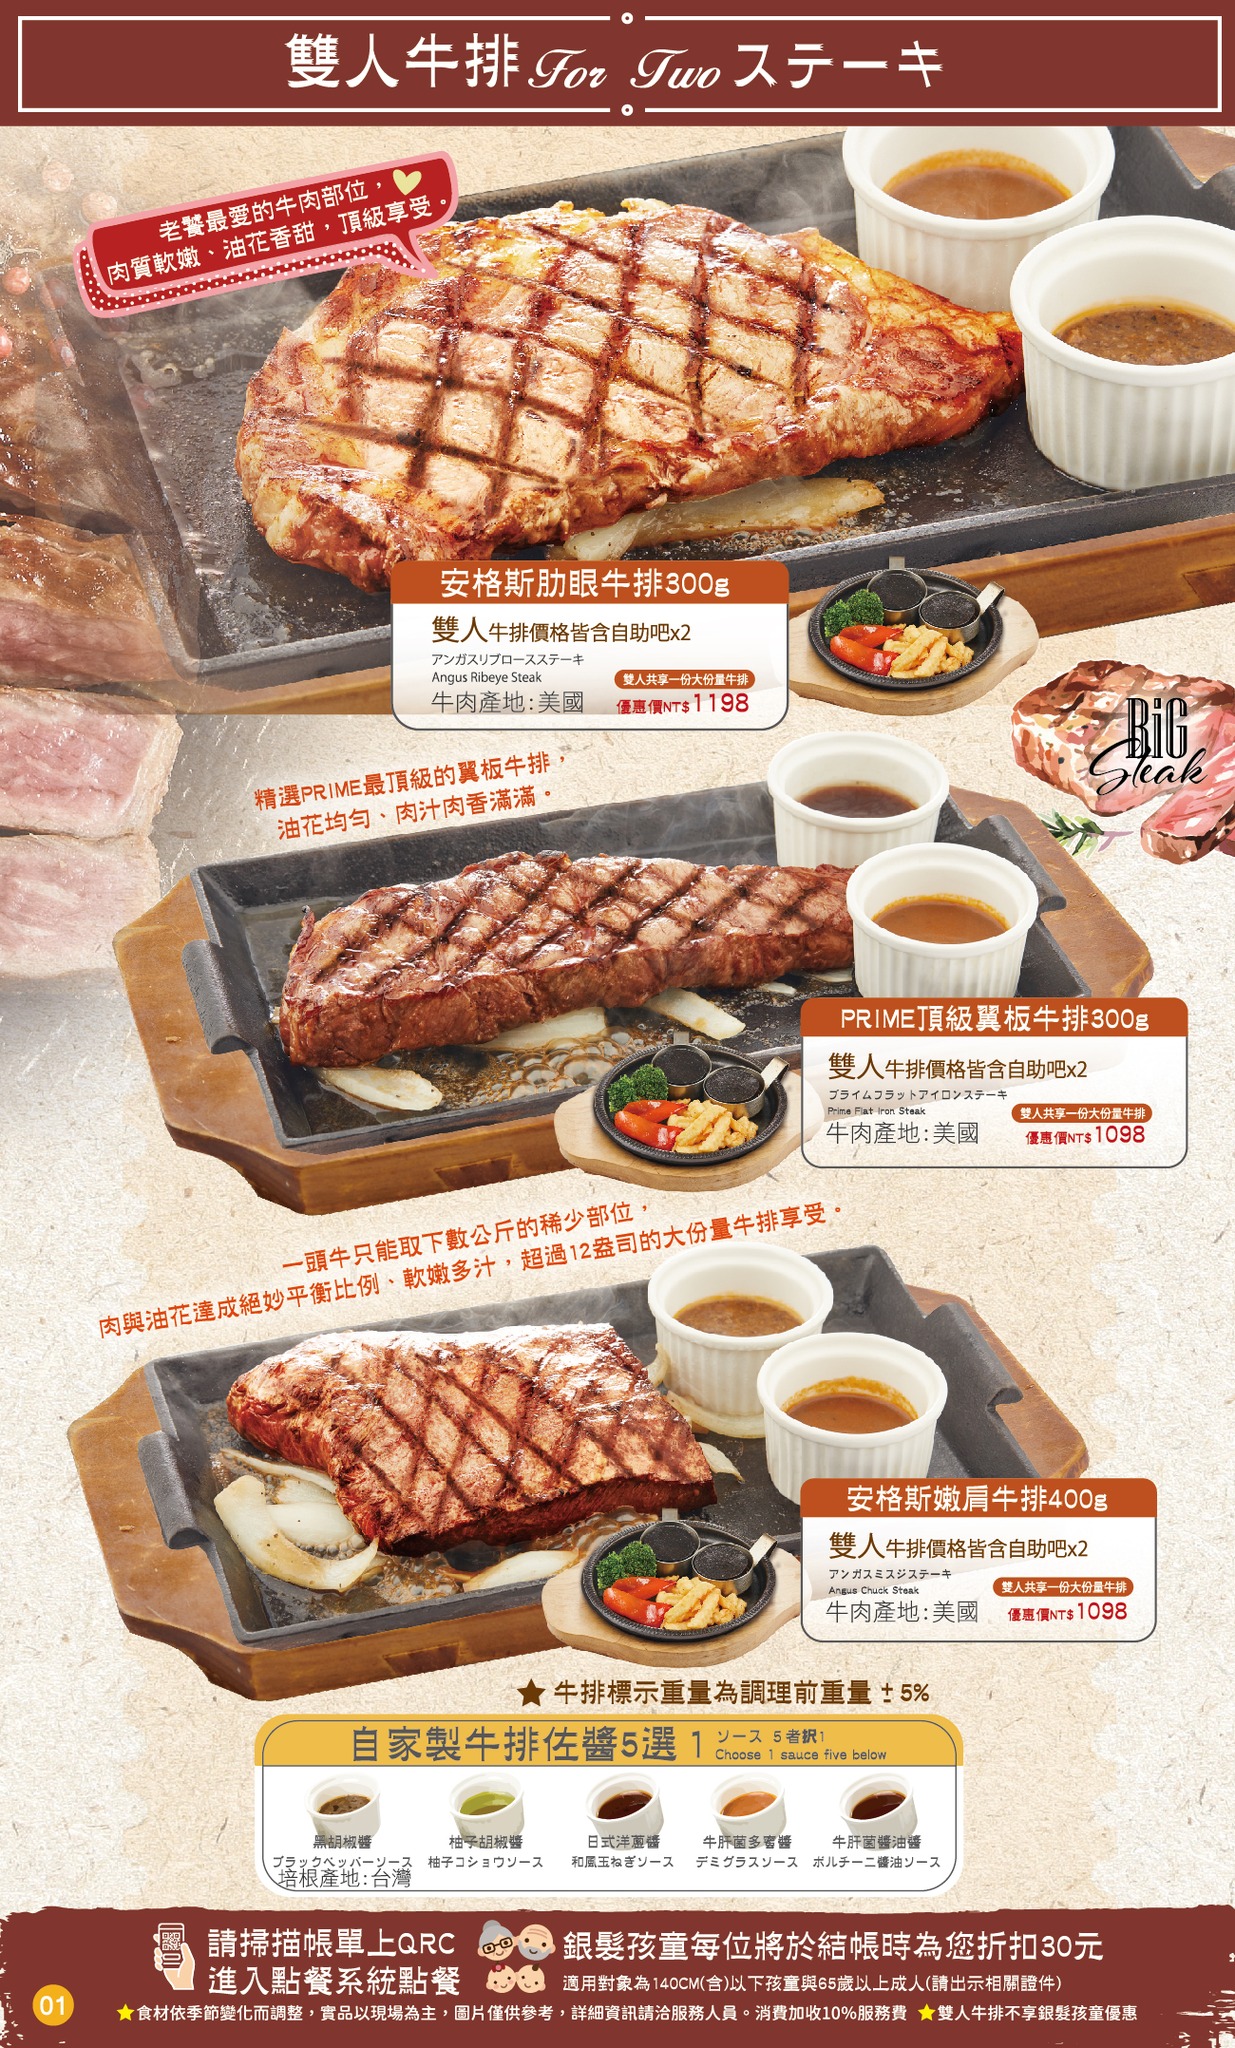 台北小巨蛋美食推薦-微風橫濱牛排，超厲害的自助吧搭主菜排餐，品質屌打貴族世家